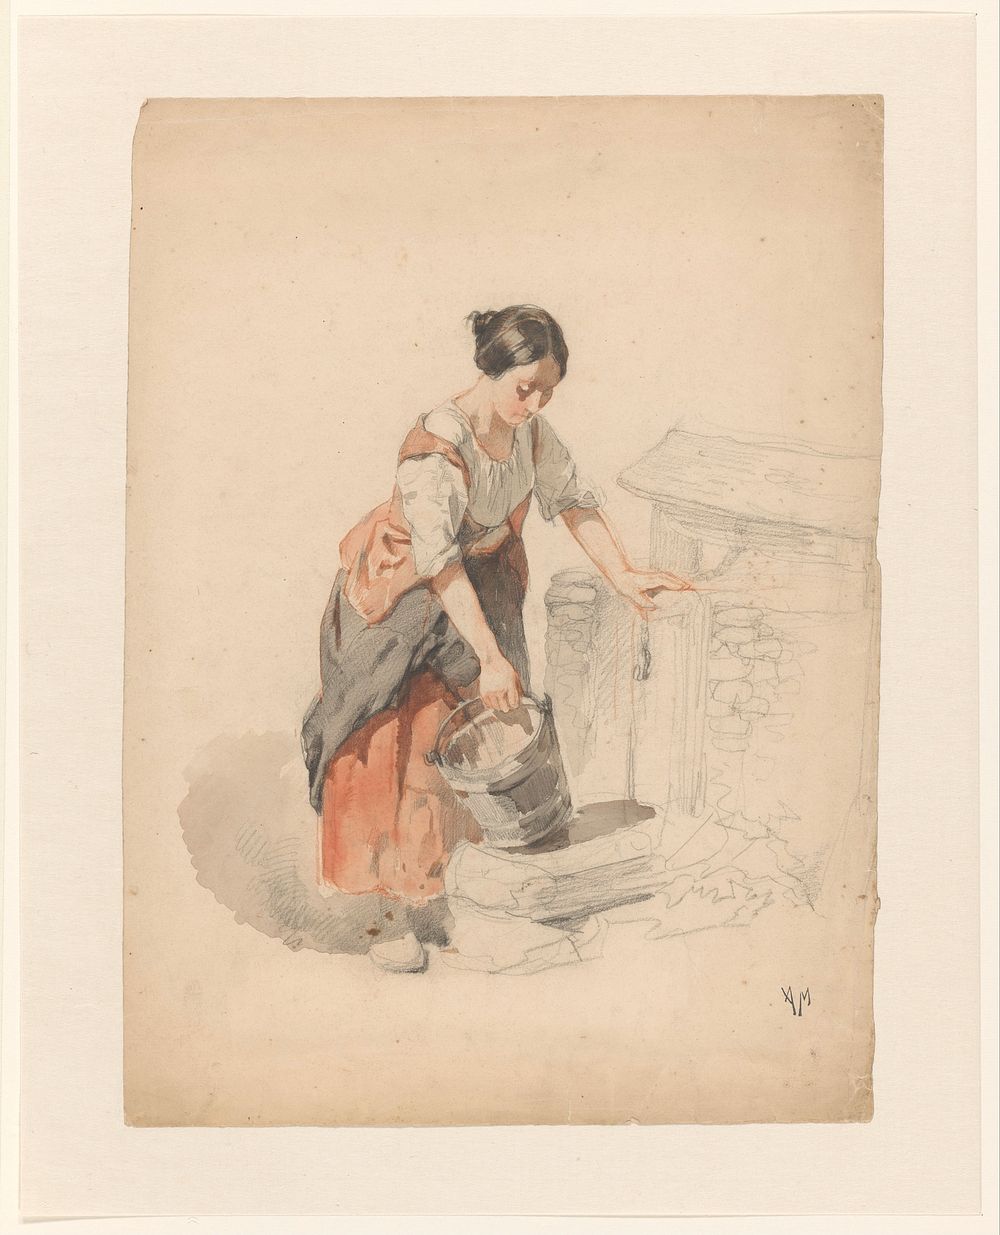 Jonge vrouw die een emmer vult (1848 - 1888) by Anton Mauve